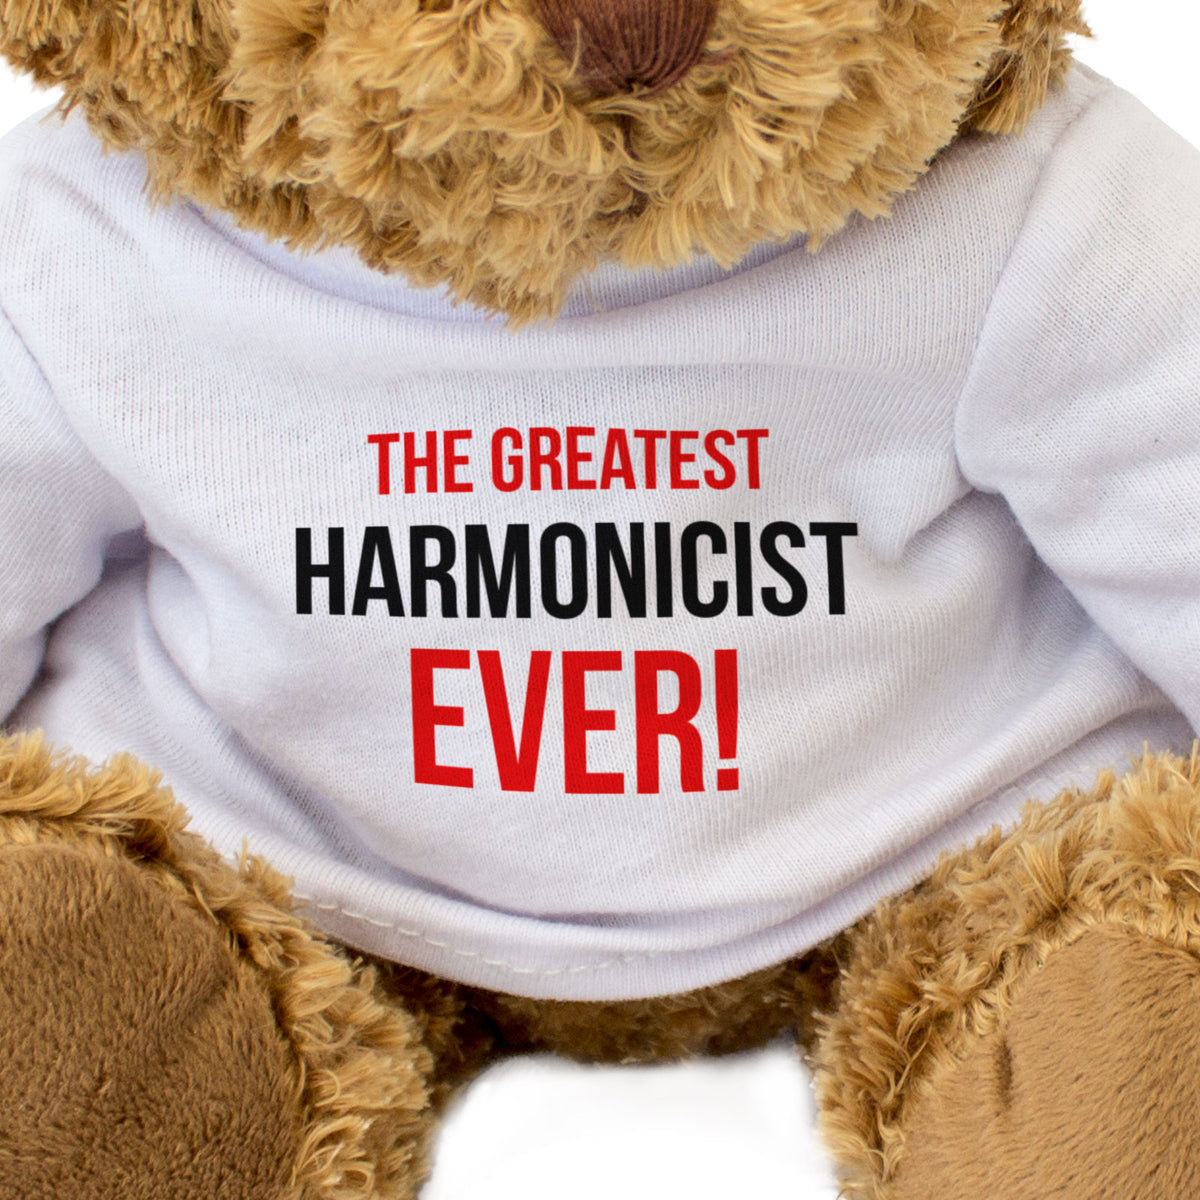 The Greatest Harmonicist Ever - Teddy Bear